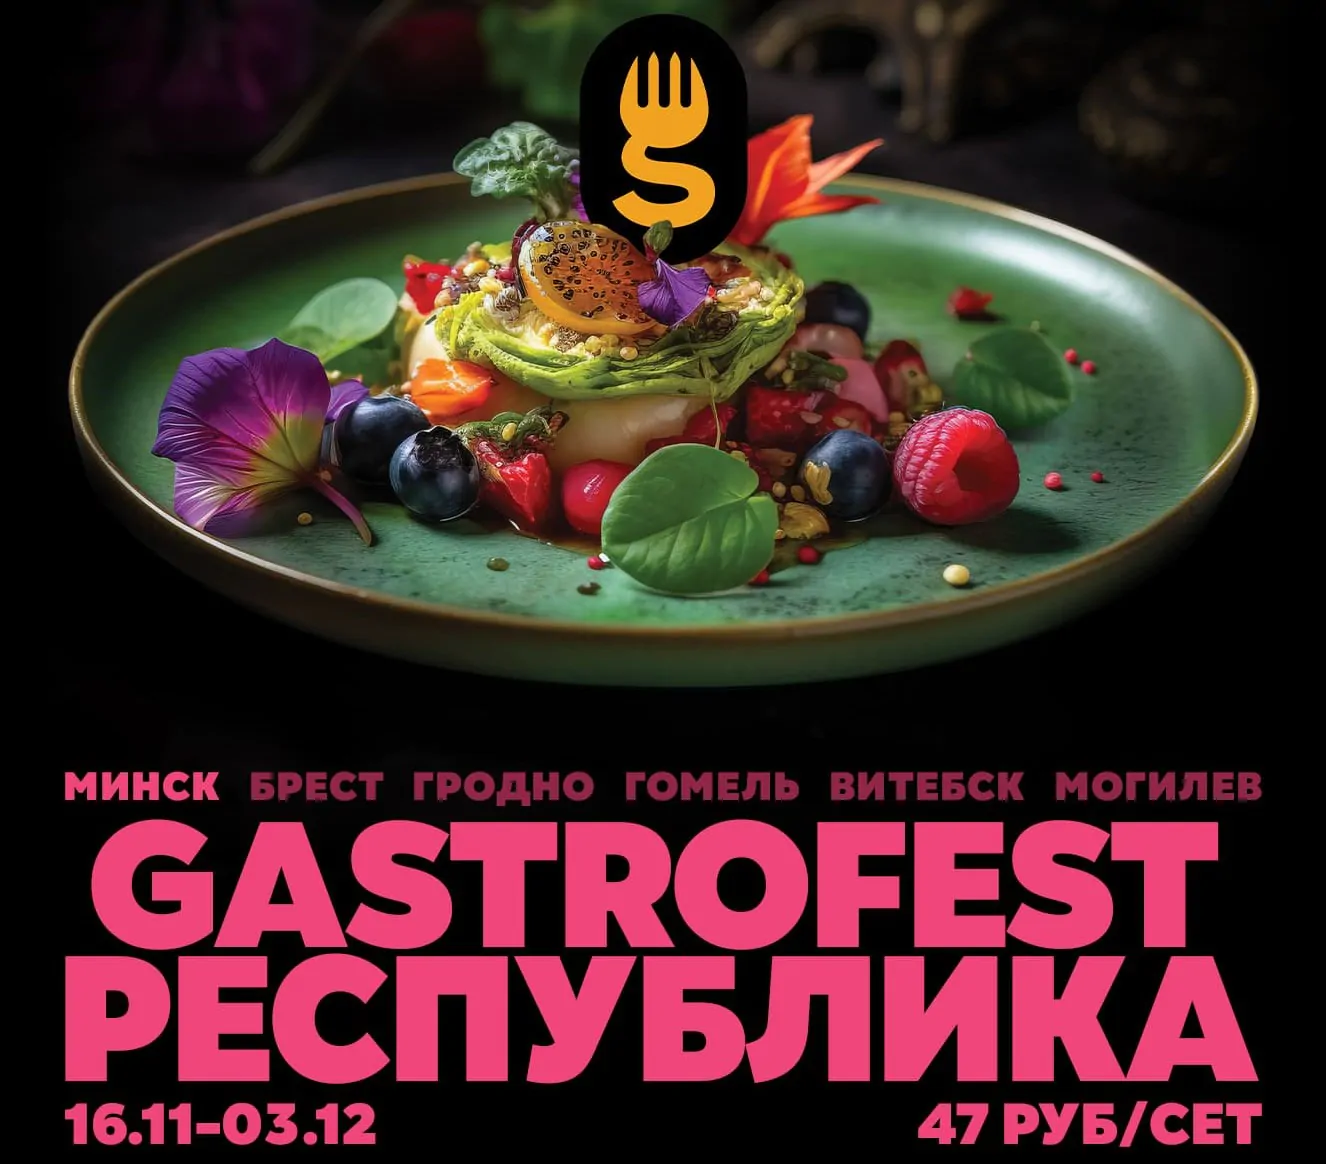 В Беларуси пройдет Республиканский фестиваль Gastrofest. Какие сеты будут предложены заведениями Минска?